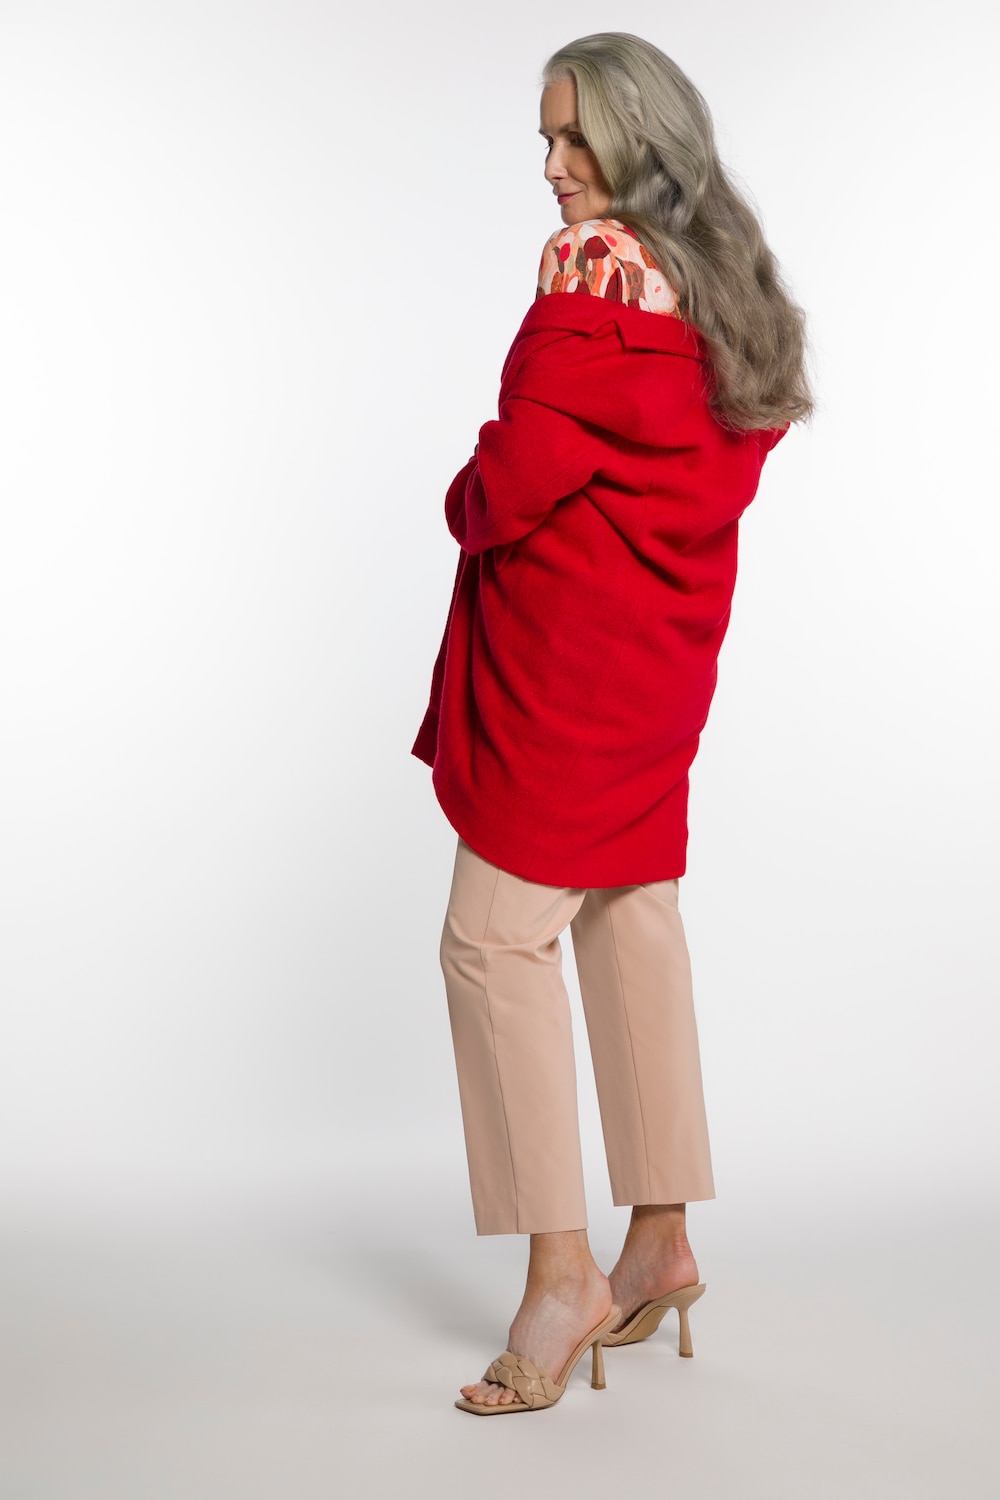 Große Größen Mantel, Damen, rot, Größe: 46, Polyester/Viskose/Wolle, Ulla Popken von Ulla Popken